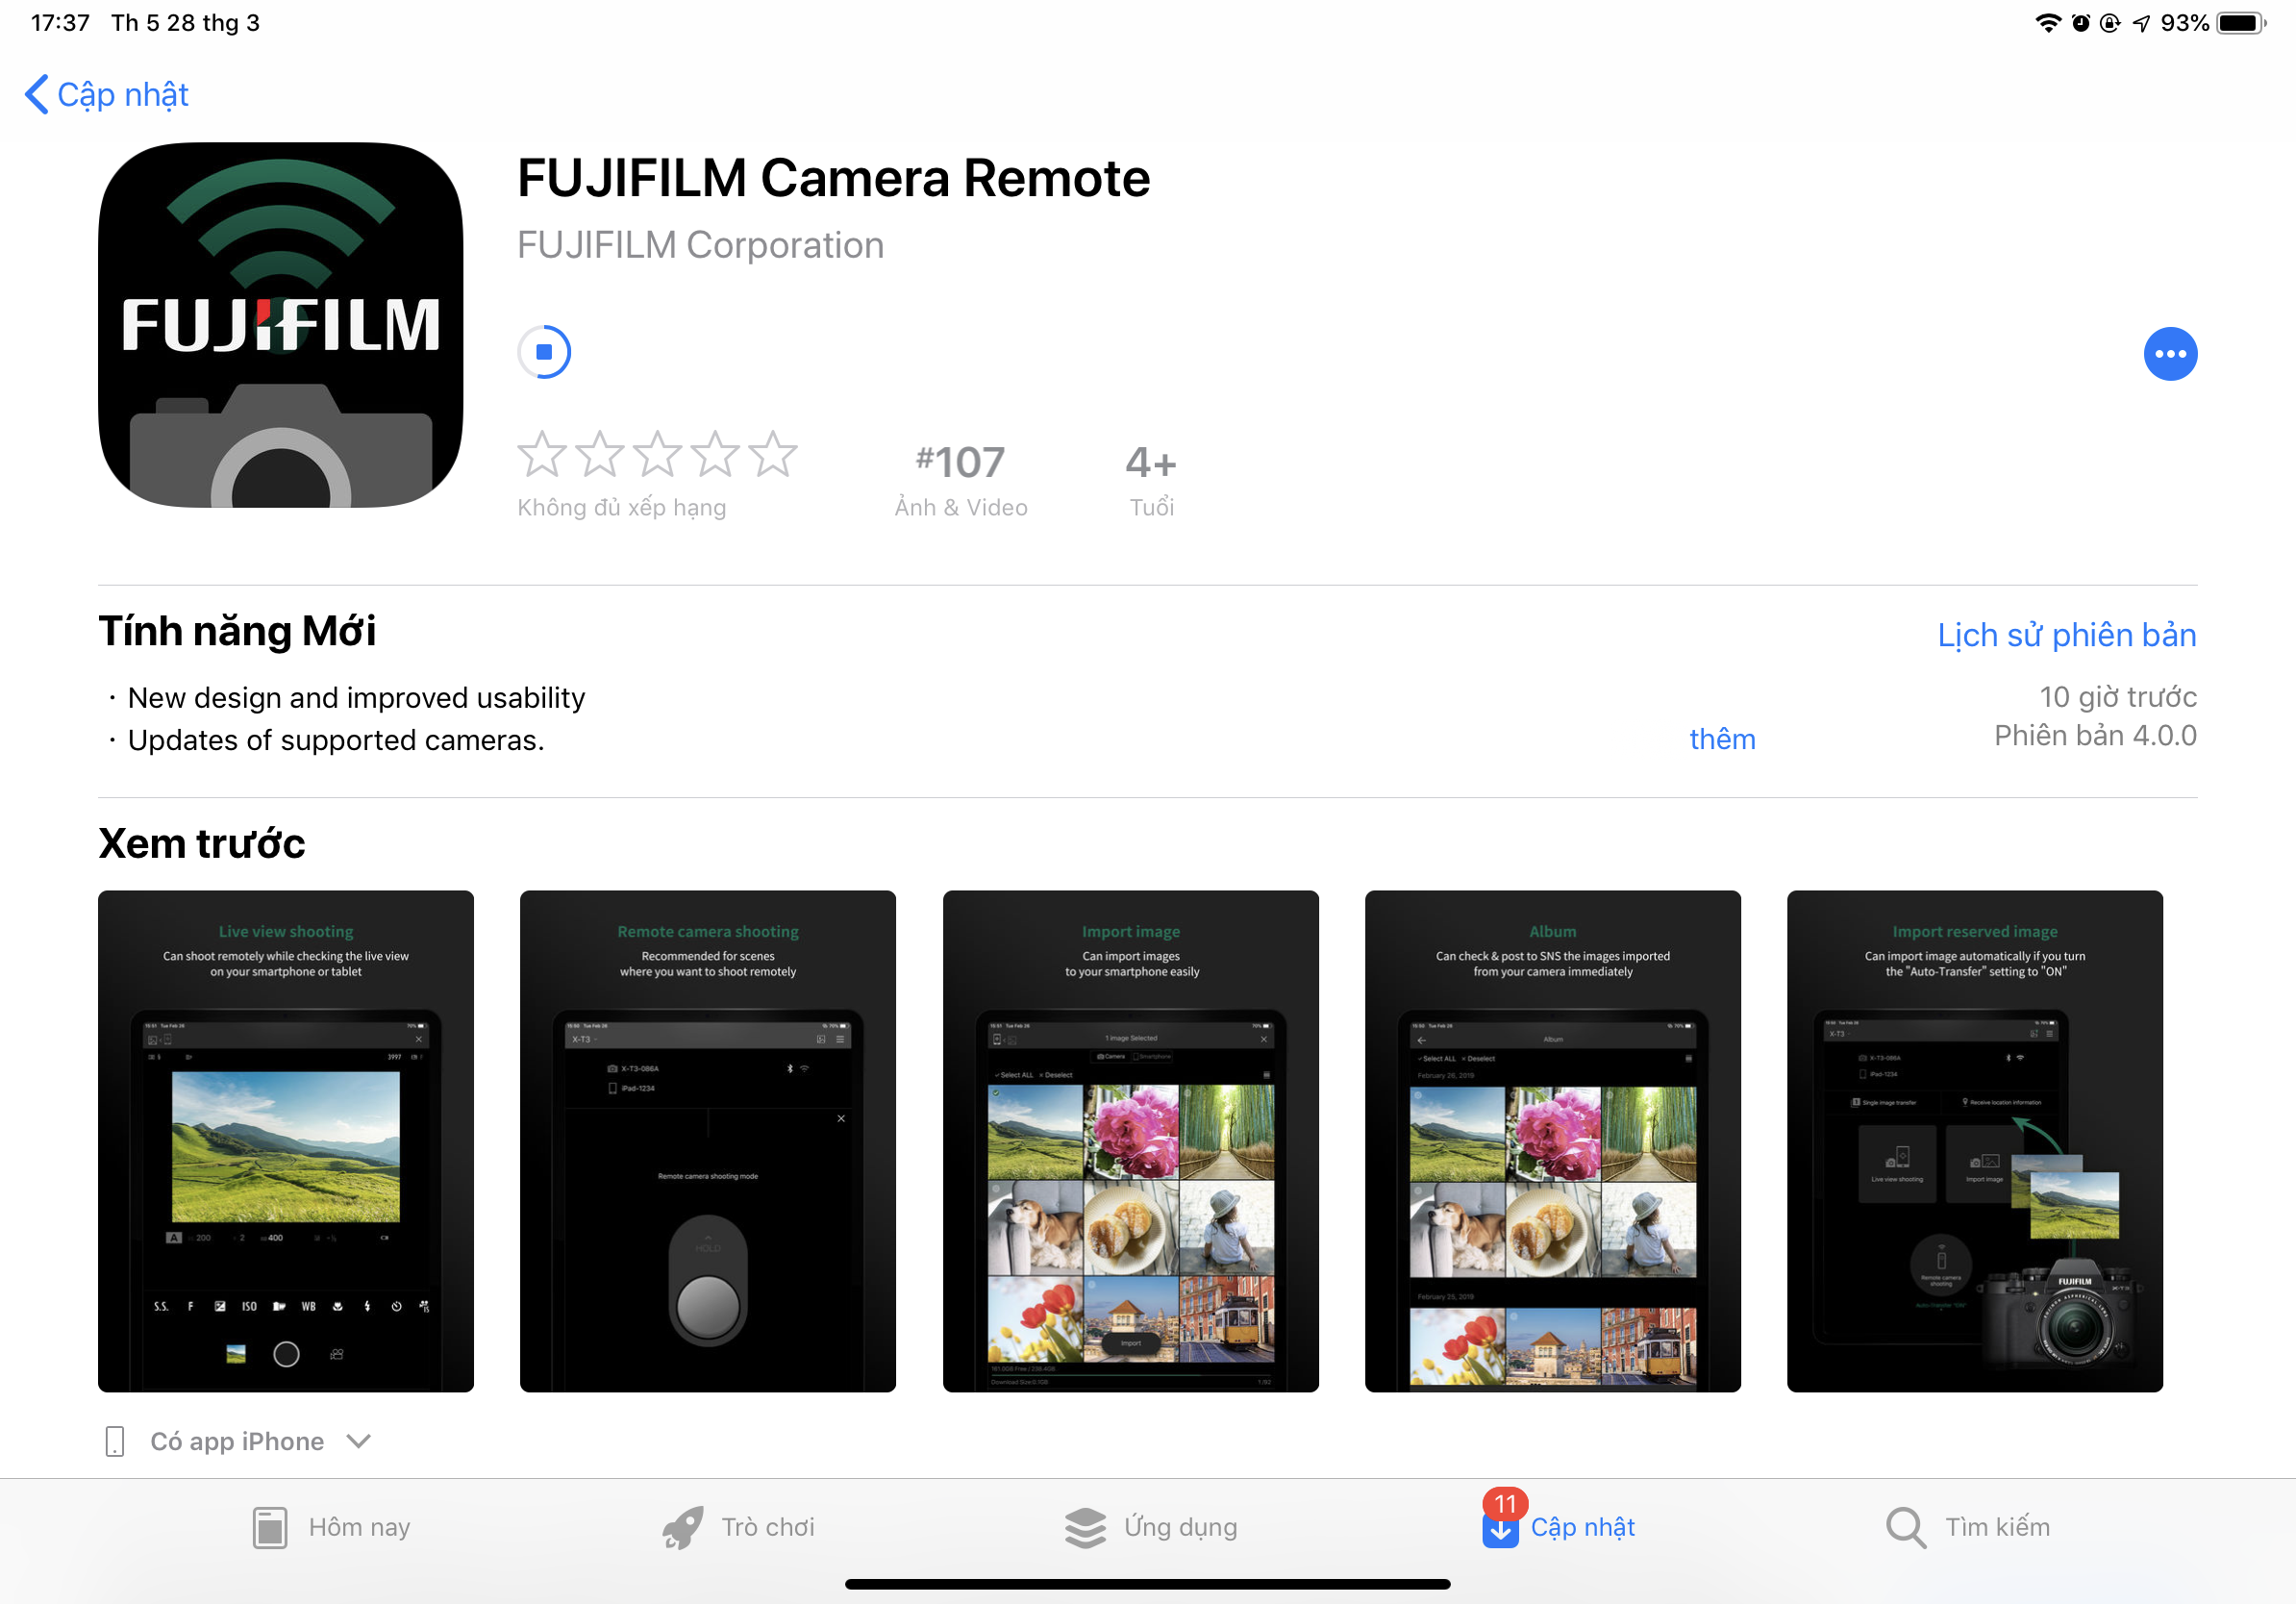 Fujifilm cập nhật ứng dụng Camera Remote 4.0 cho iOS, thay đổi toàn bộ giao diện